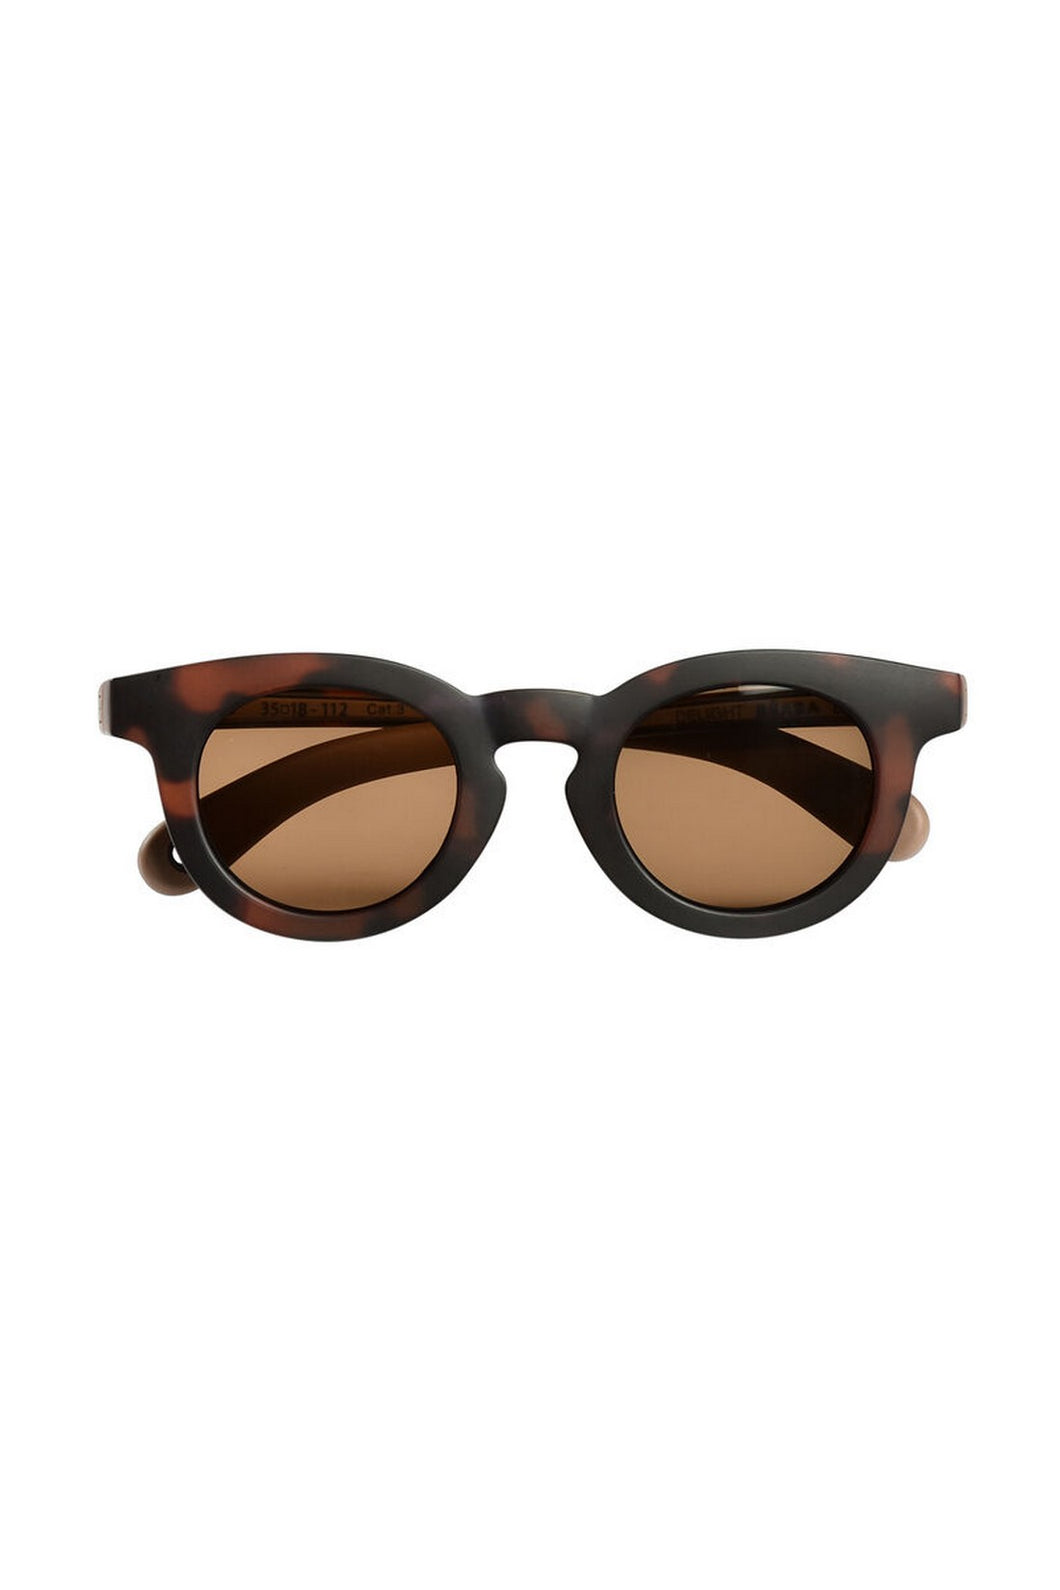 Beaba Sunglasses 9-24M - Dark Tortoise 1